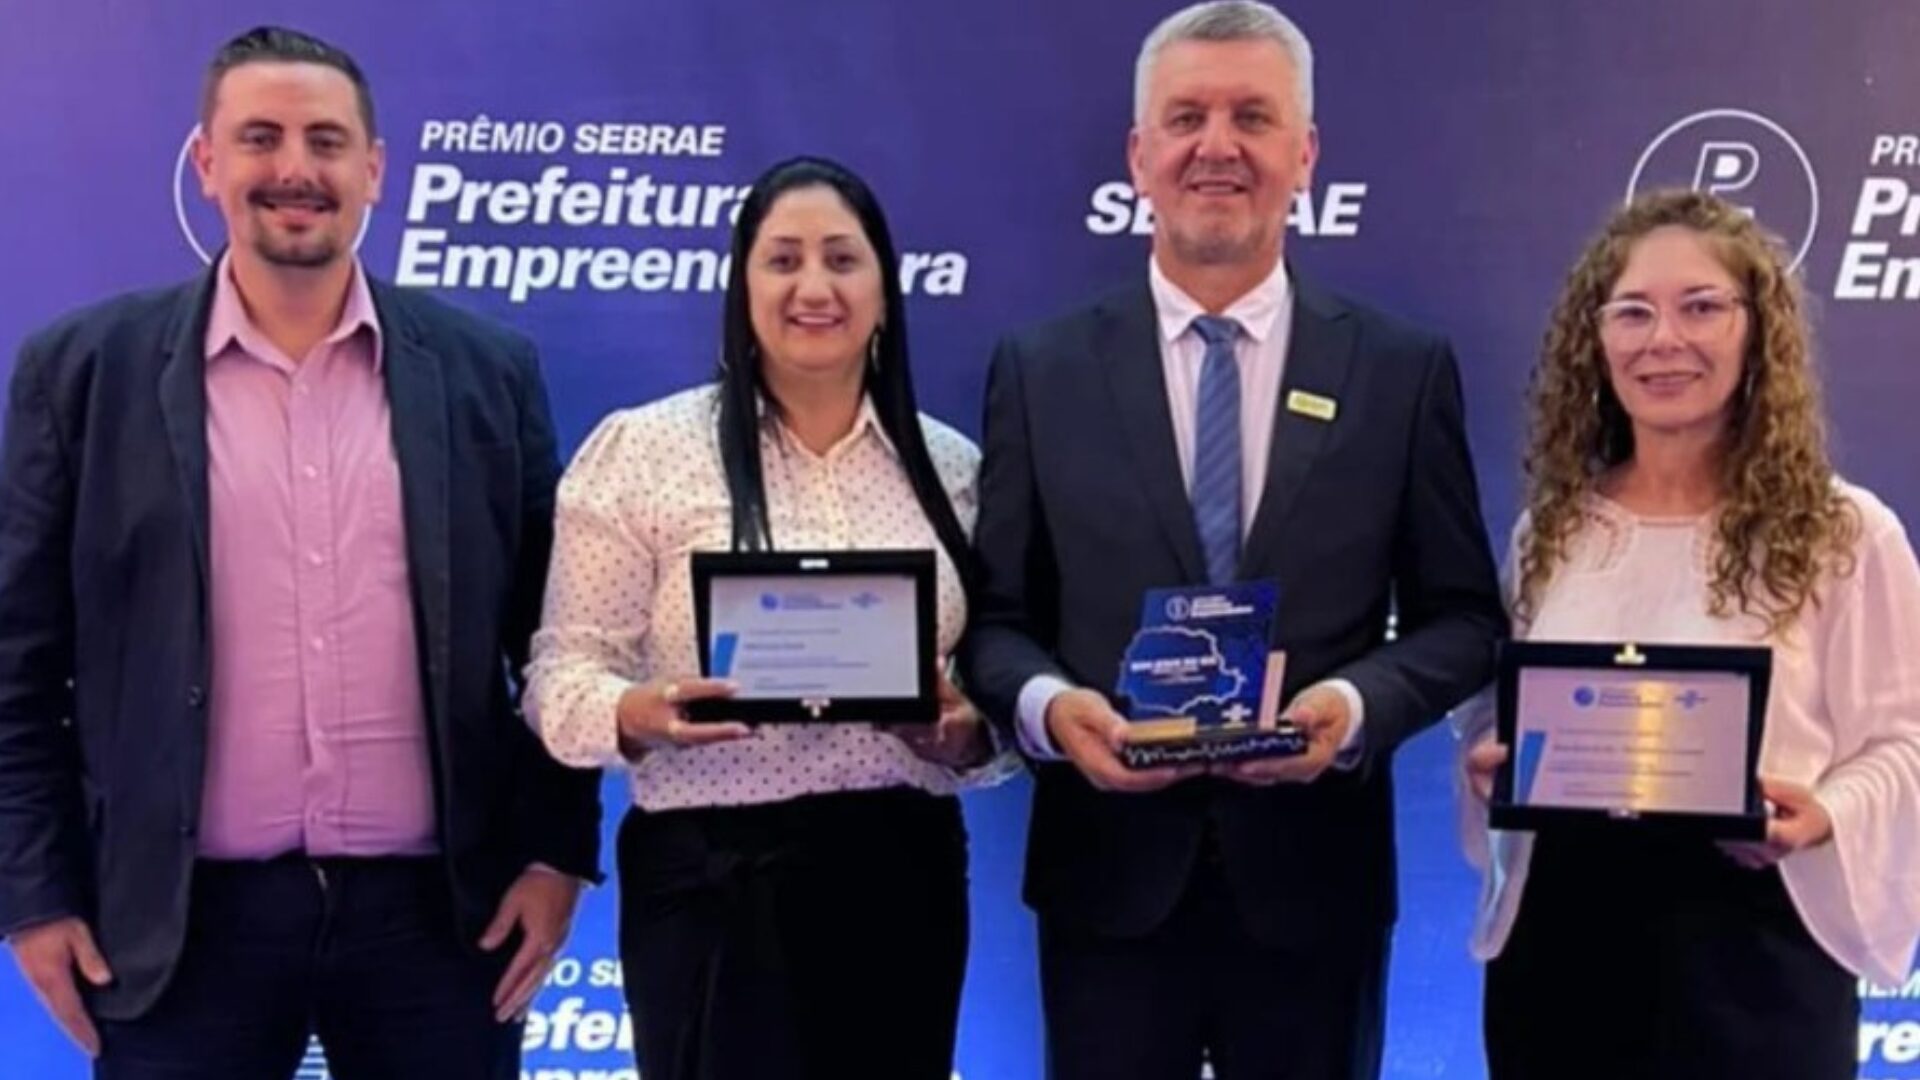 O município de Bom Jesus do Sul ganhou destaque estadual ao conquistar o 1º lugar no prêmio Prefeitura Empreendedora, promovido pelo Sebrae Paraná.